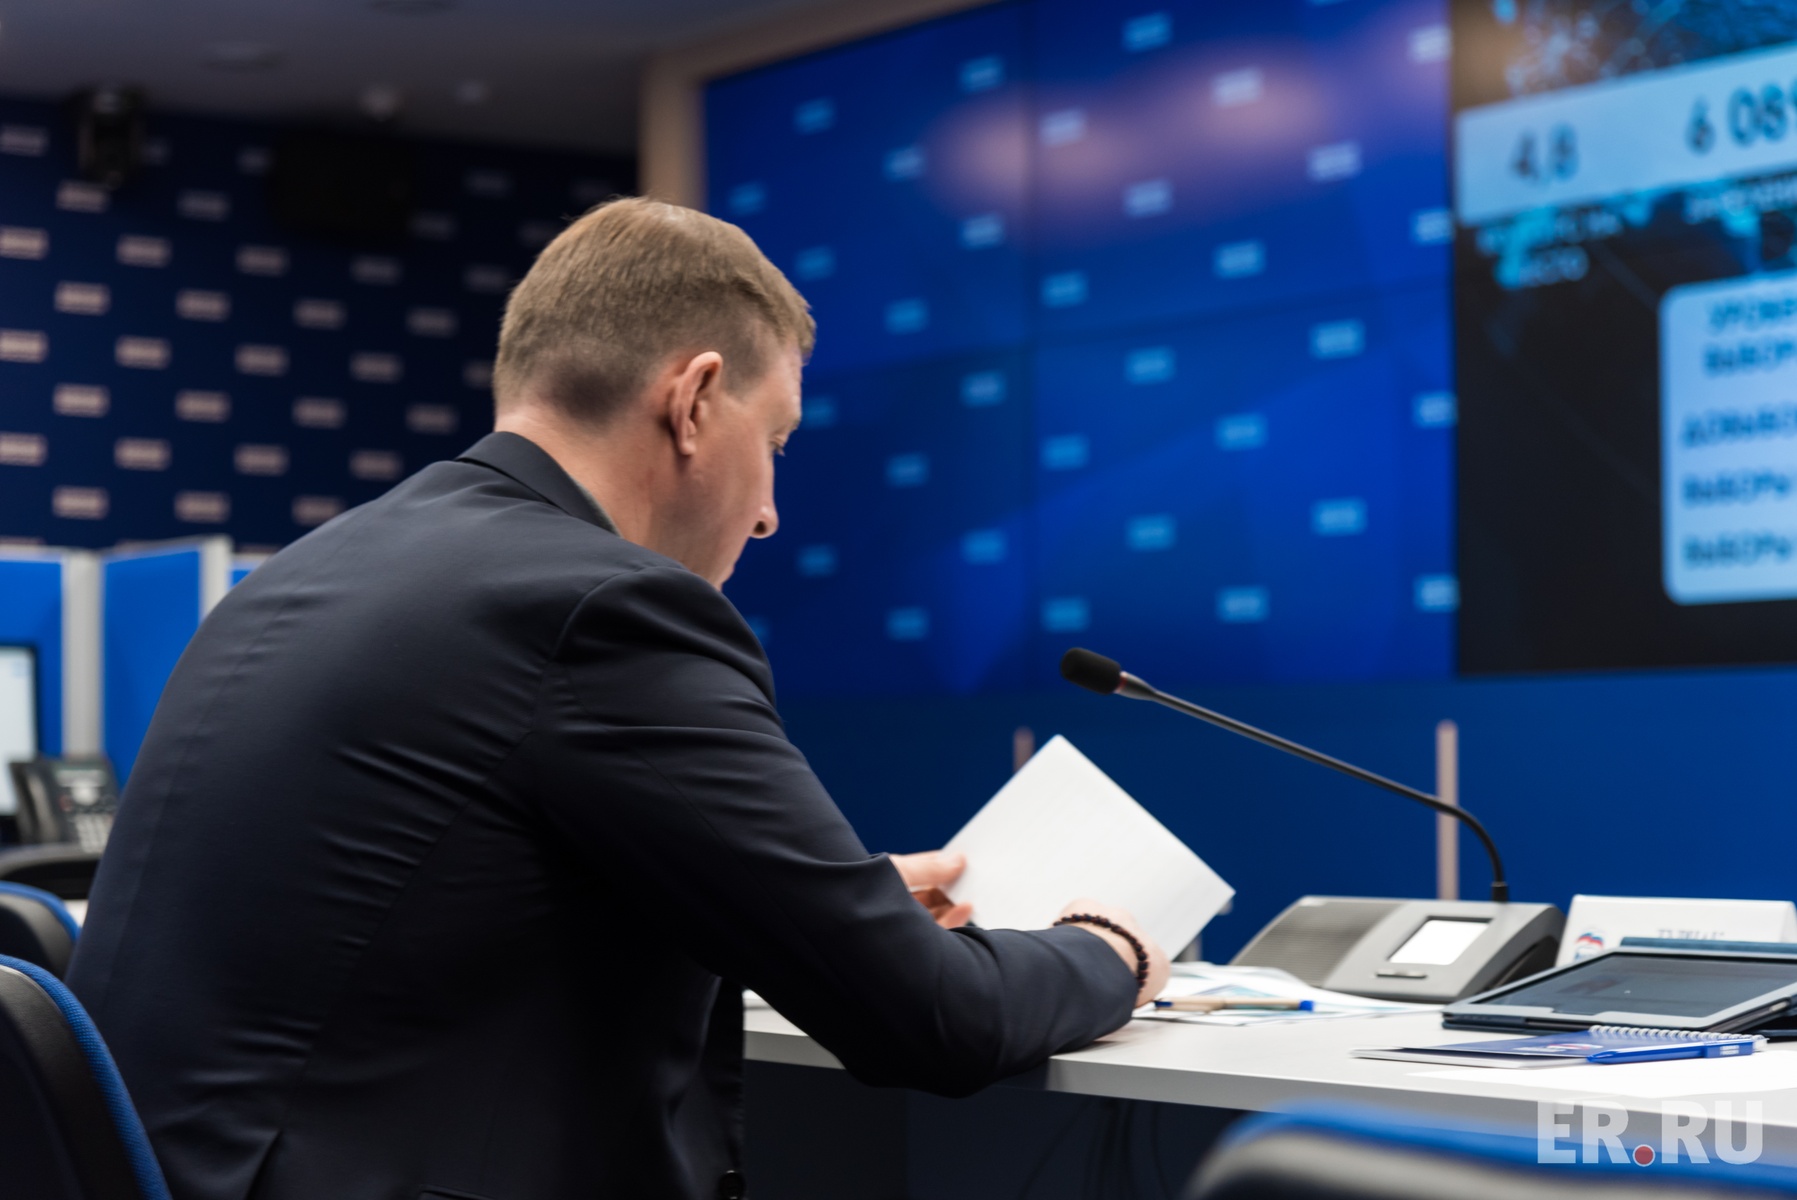  Онлайн-совещание Дмитрия Медведева с региональными отделениями партии, посвященное подведению итогов электронного предварительного голосования 